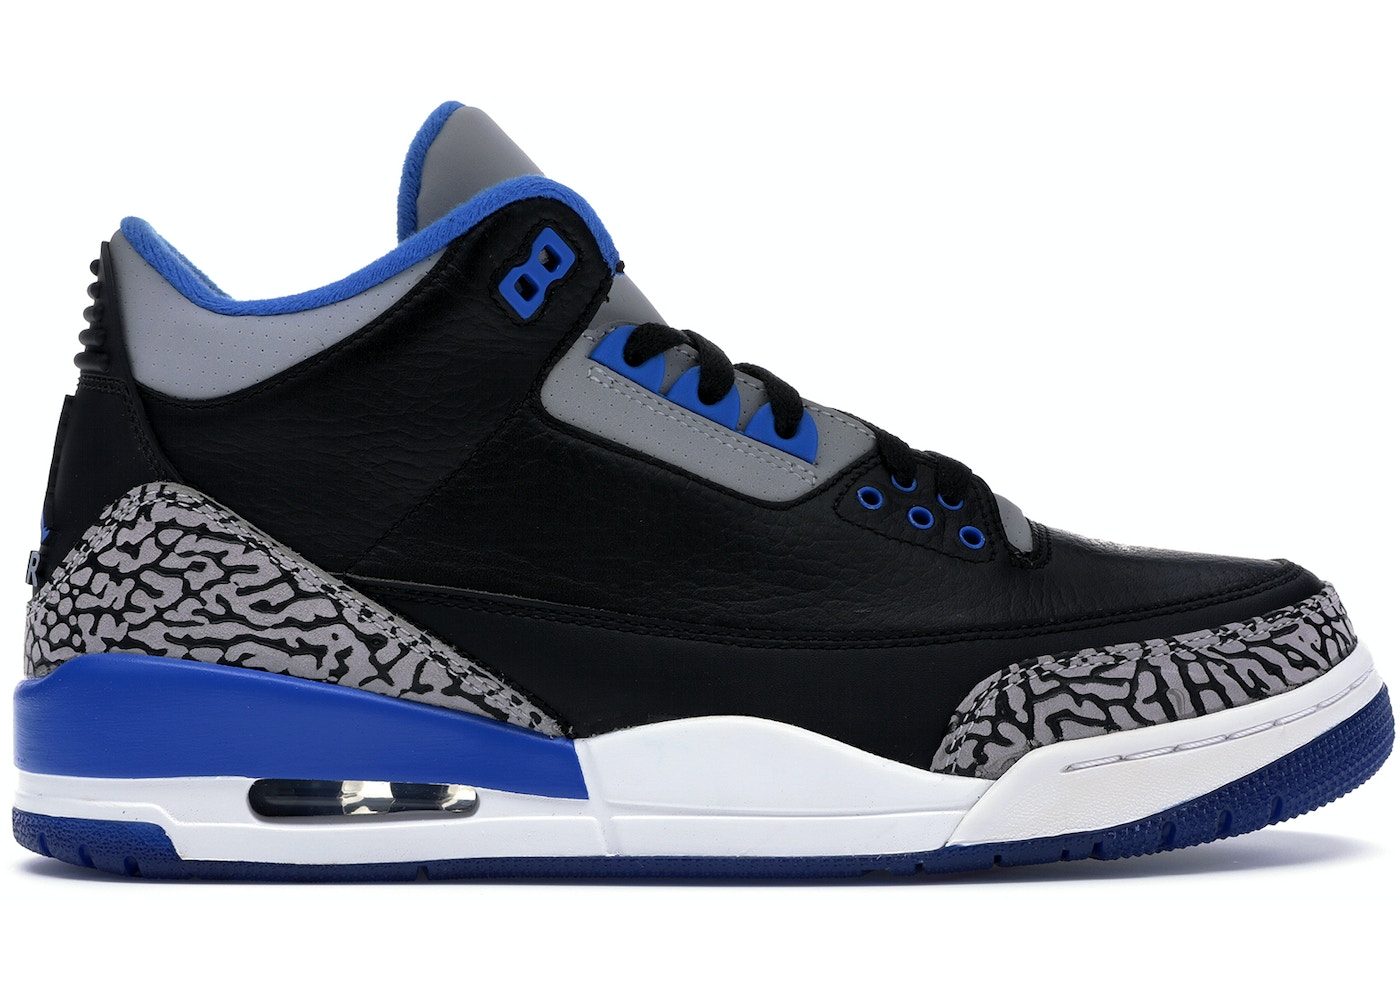 Sport Blue 3S : Jordan Shoes Custom Retro 3 Preciously Sport Blue 3s